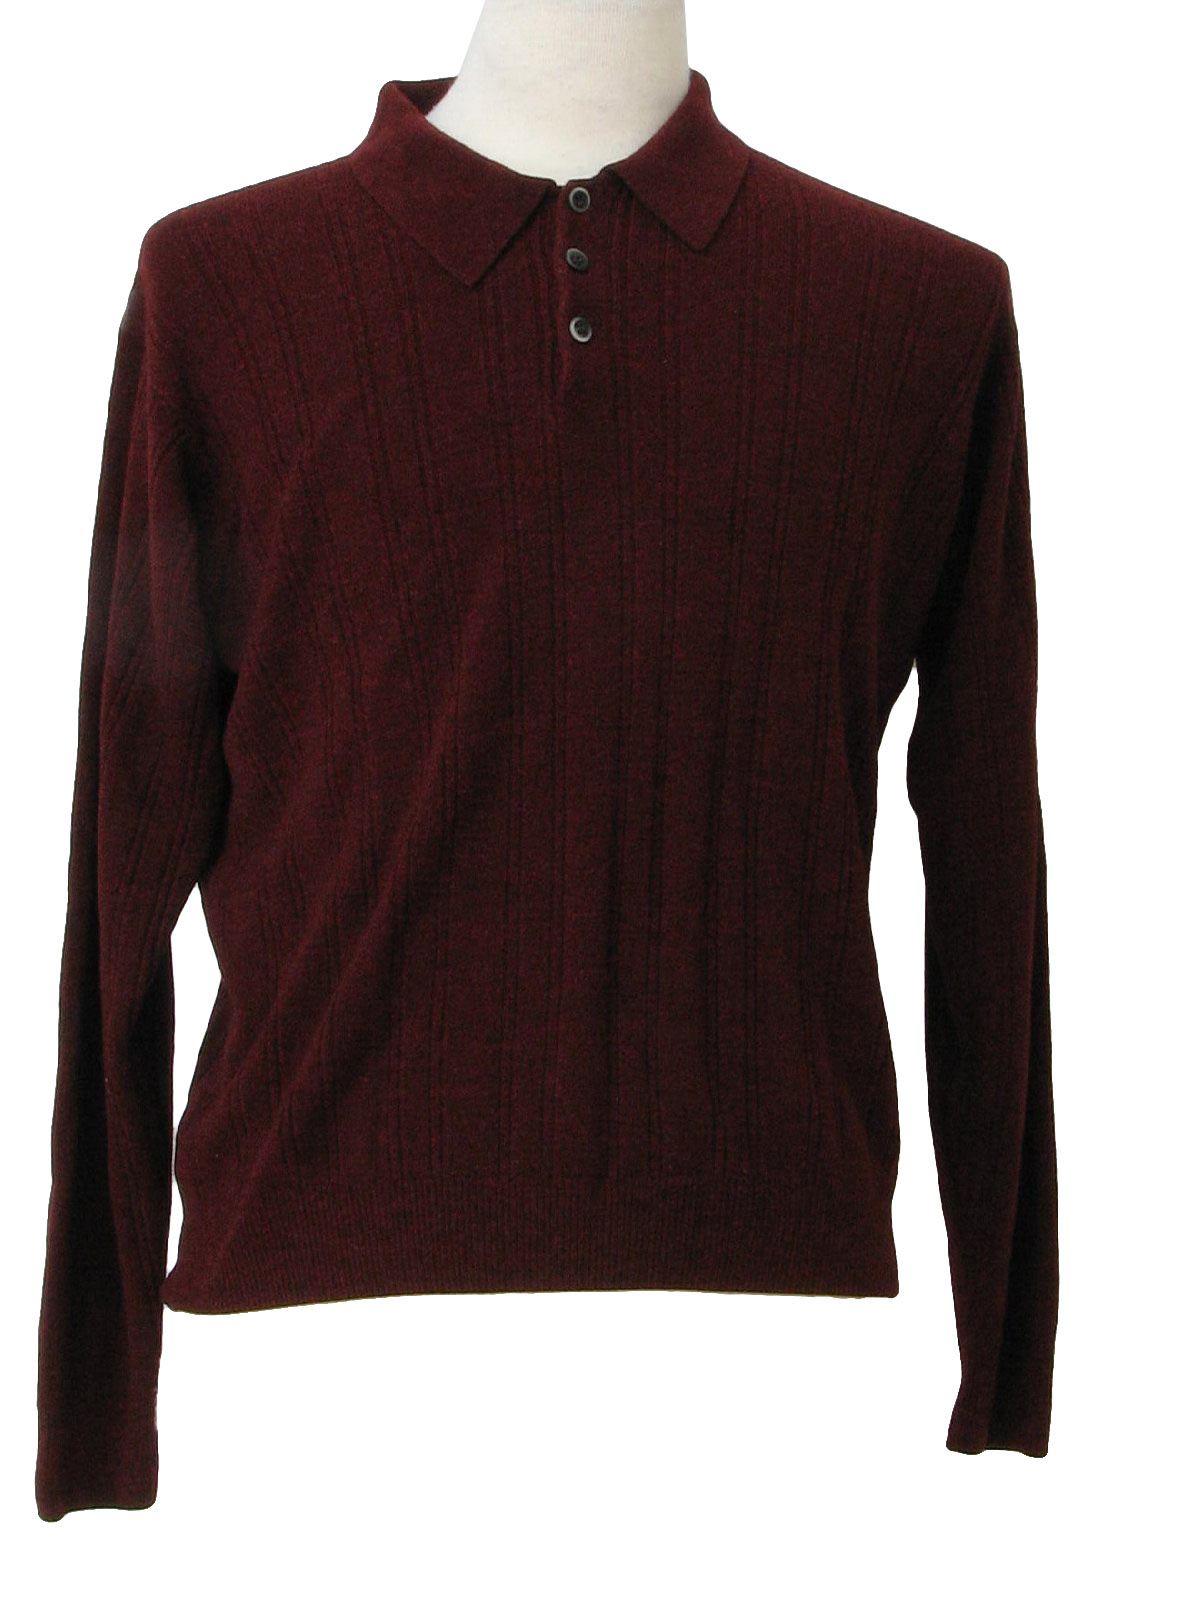 Dockers Eighties Vintage Knit Shirt: 80s -Dockers- Mens heather maroon ...